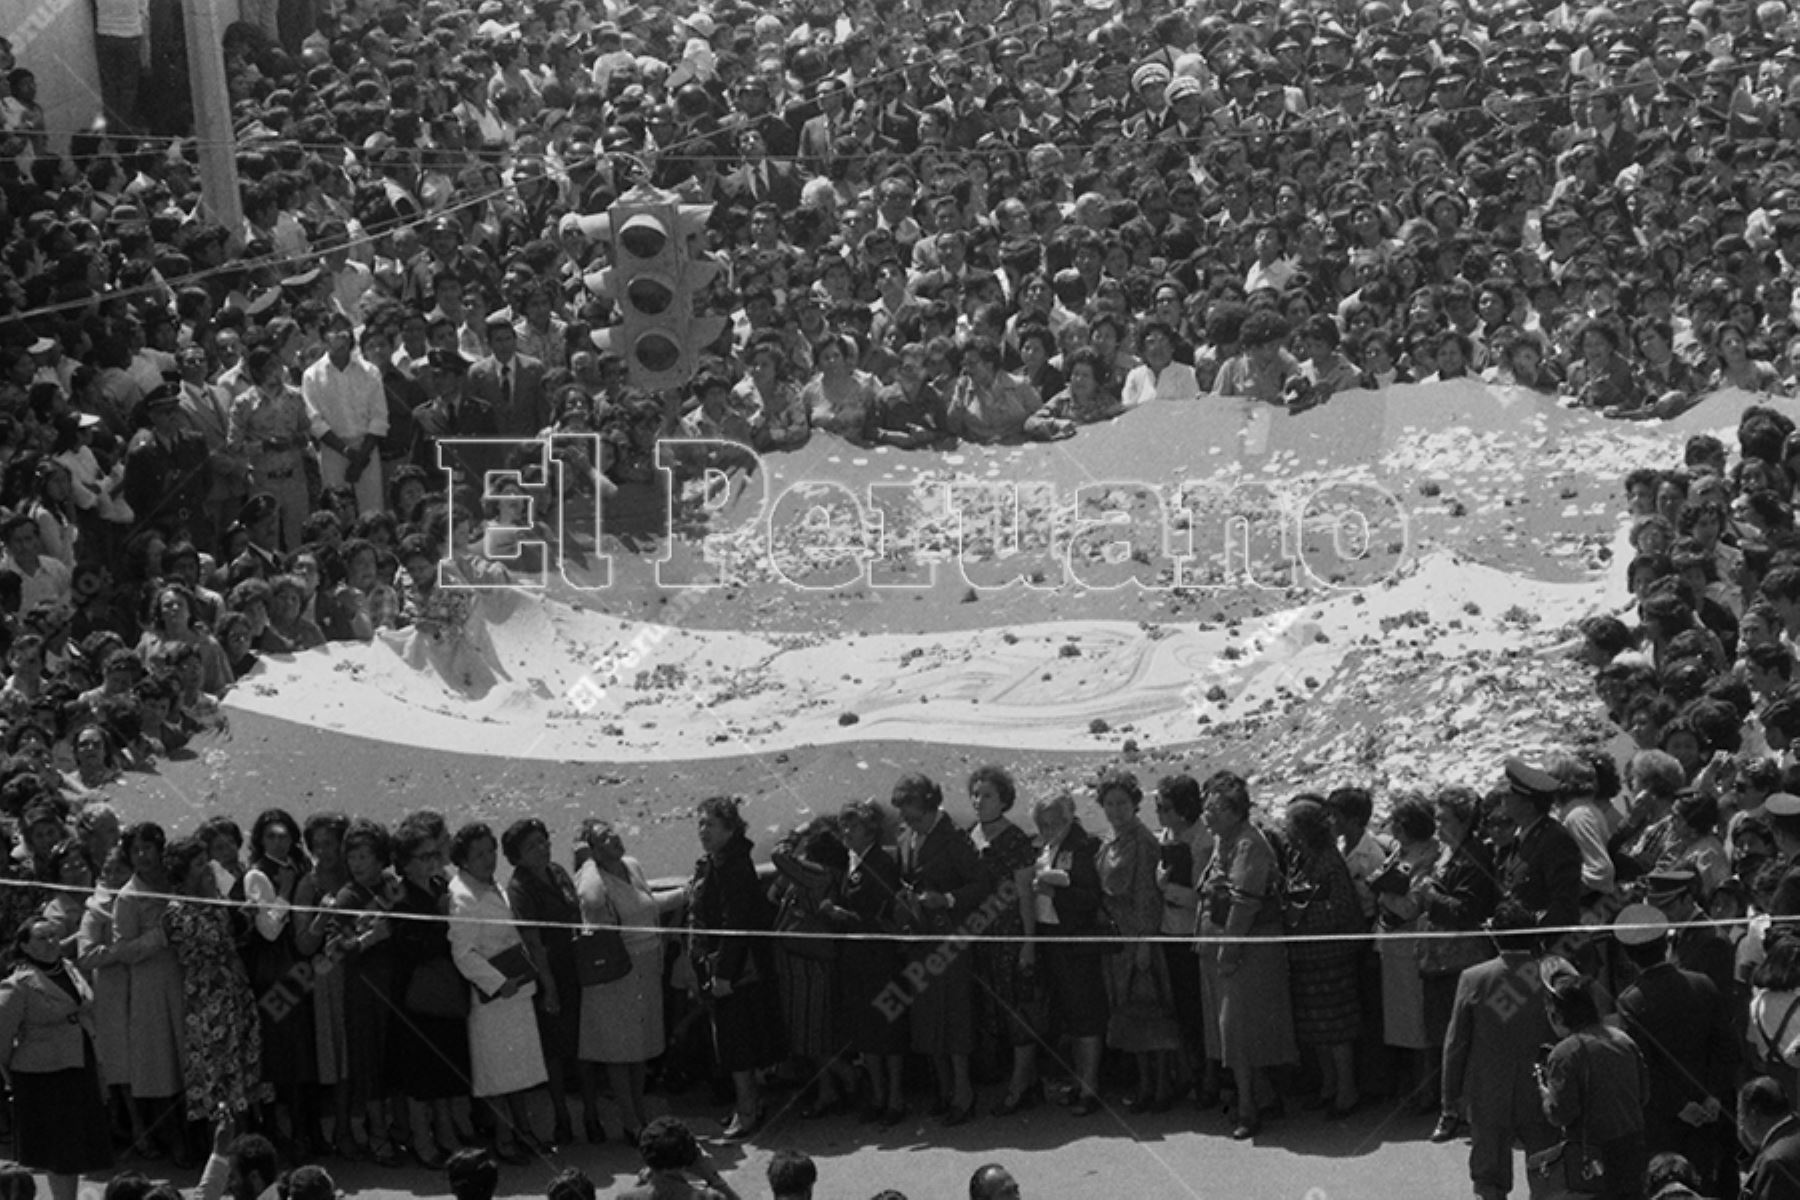 La Solemne Procesión de la Bandera en Tacna, la Ciudad Heroica, fue declarada Patrimonio Cultural de la Nación el 26 de agosto de 2009.  ANDINA/archivo